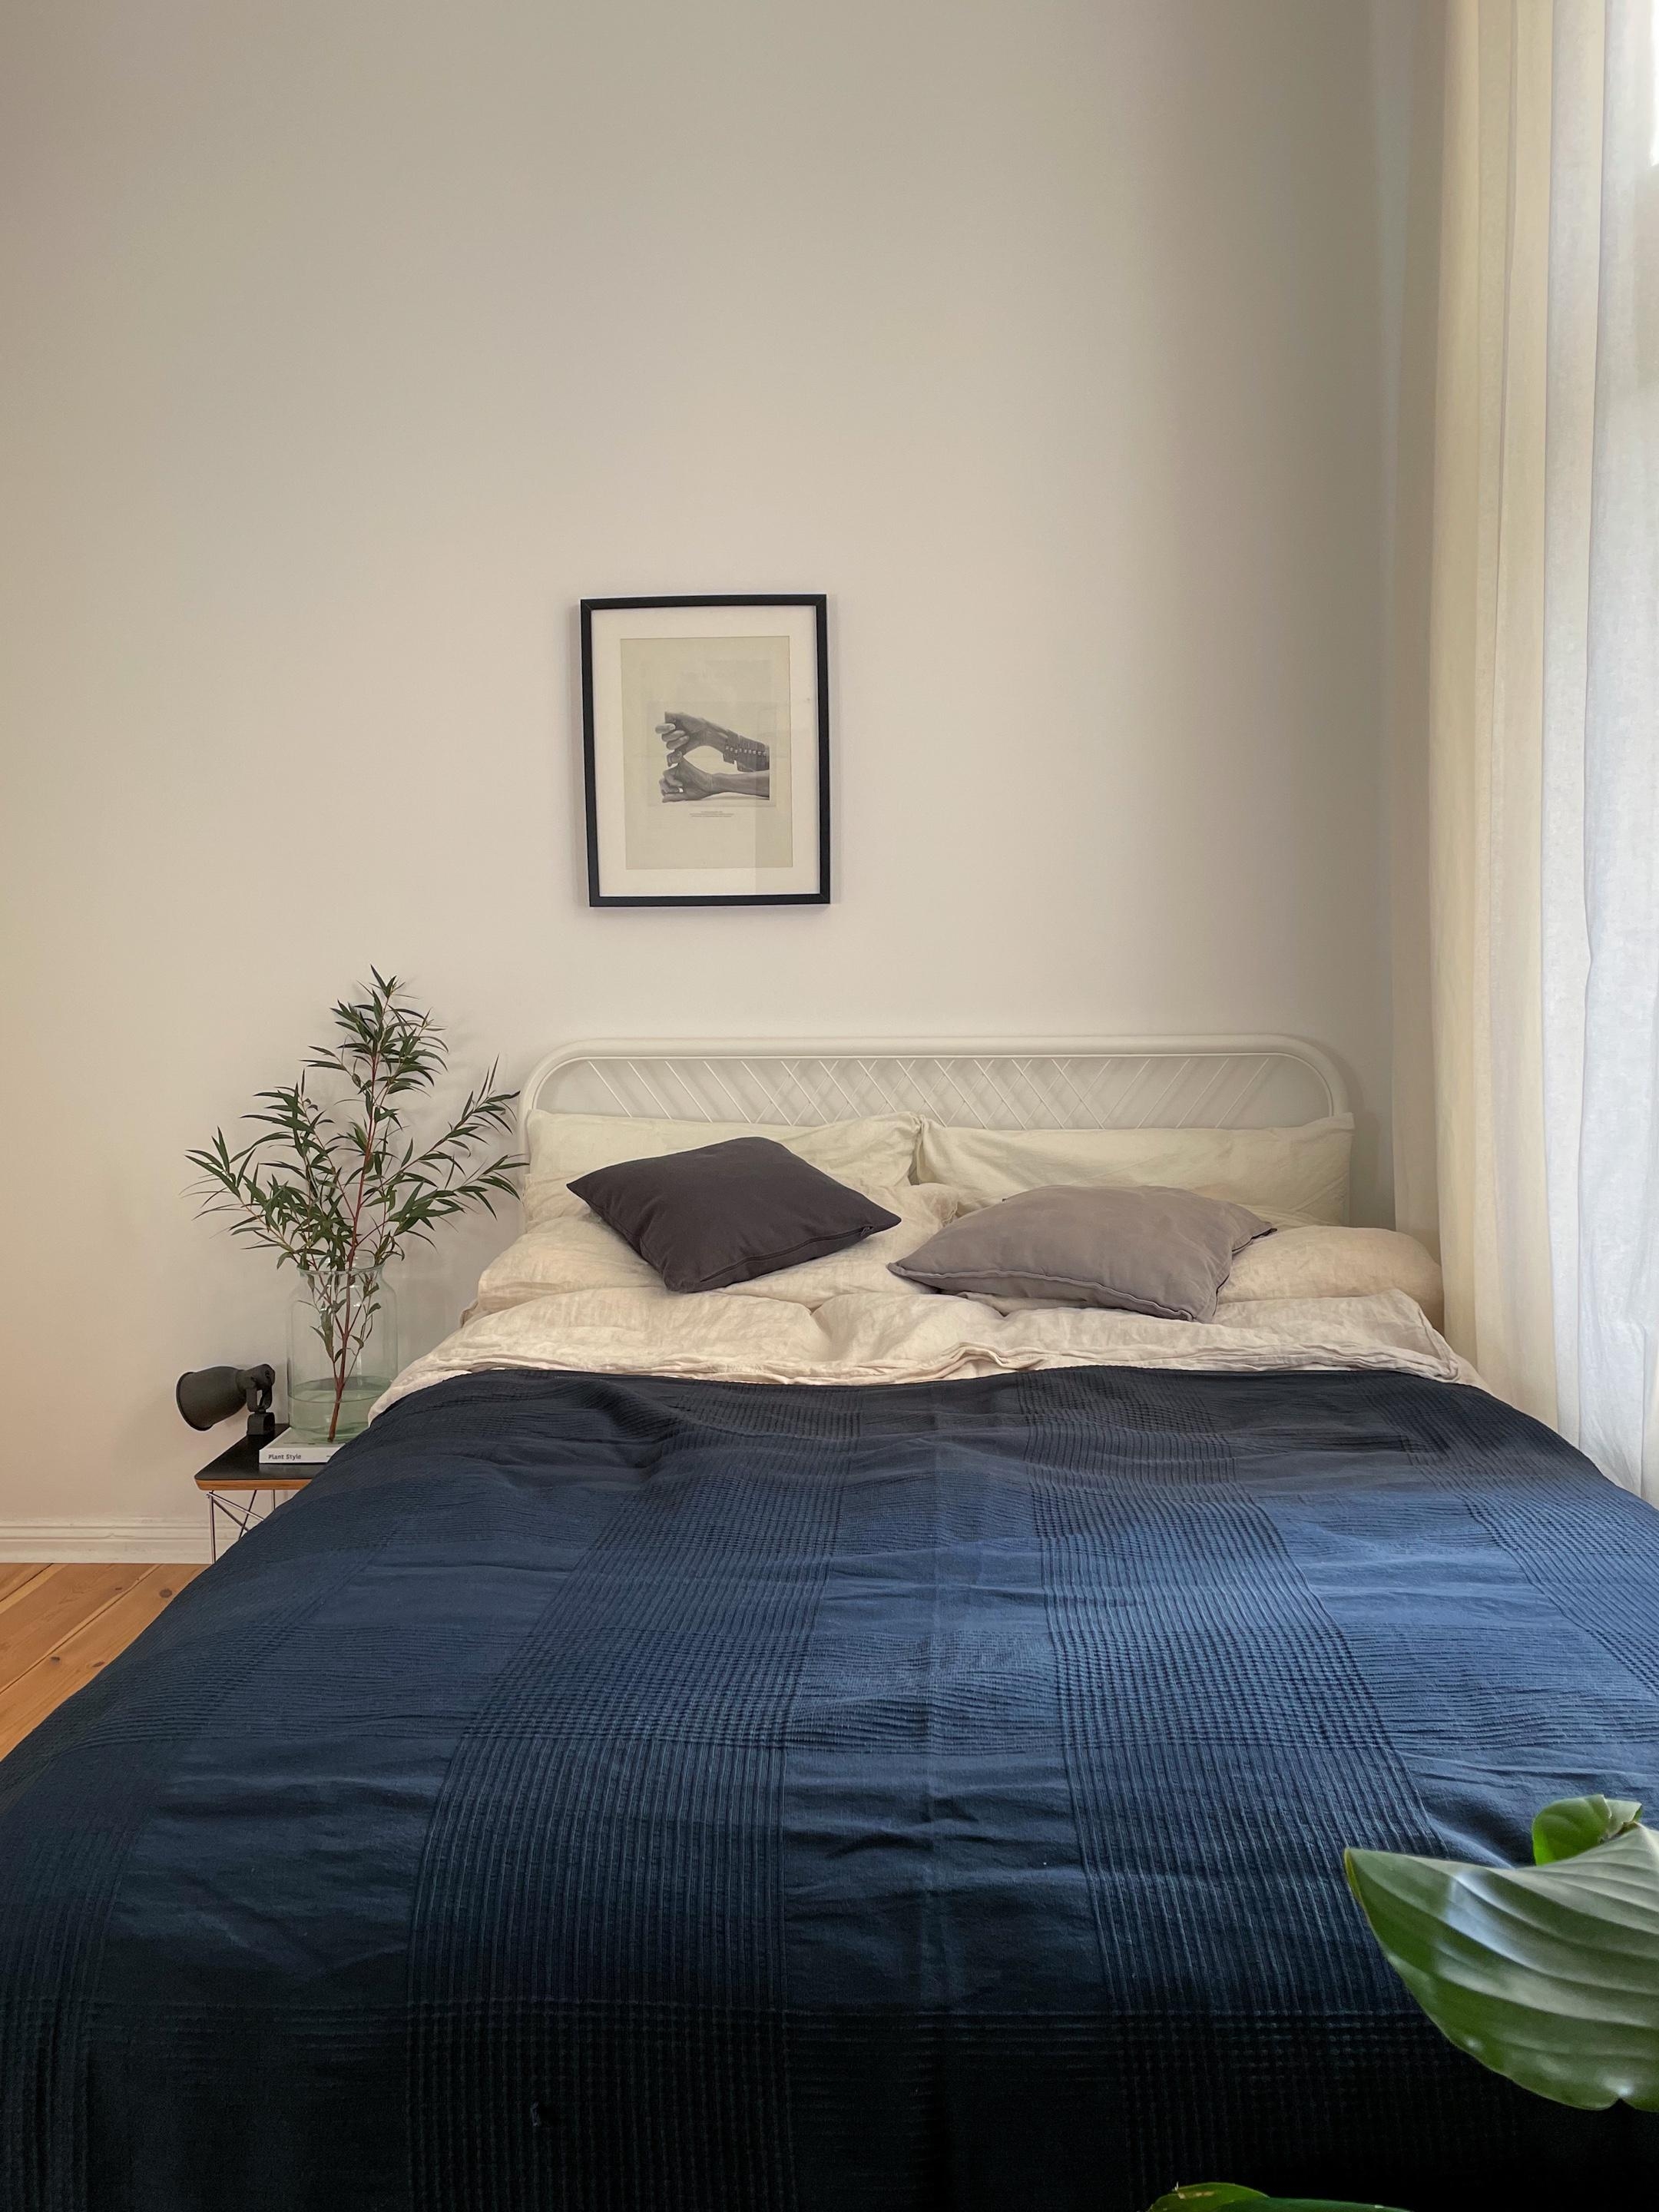 #bedroom #schlafzimmer #tagesdecke #minimalism #bett